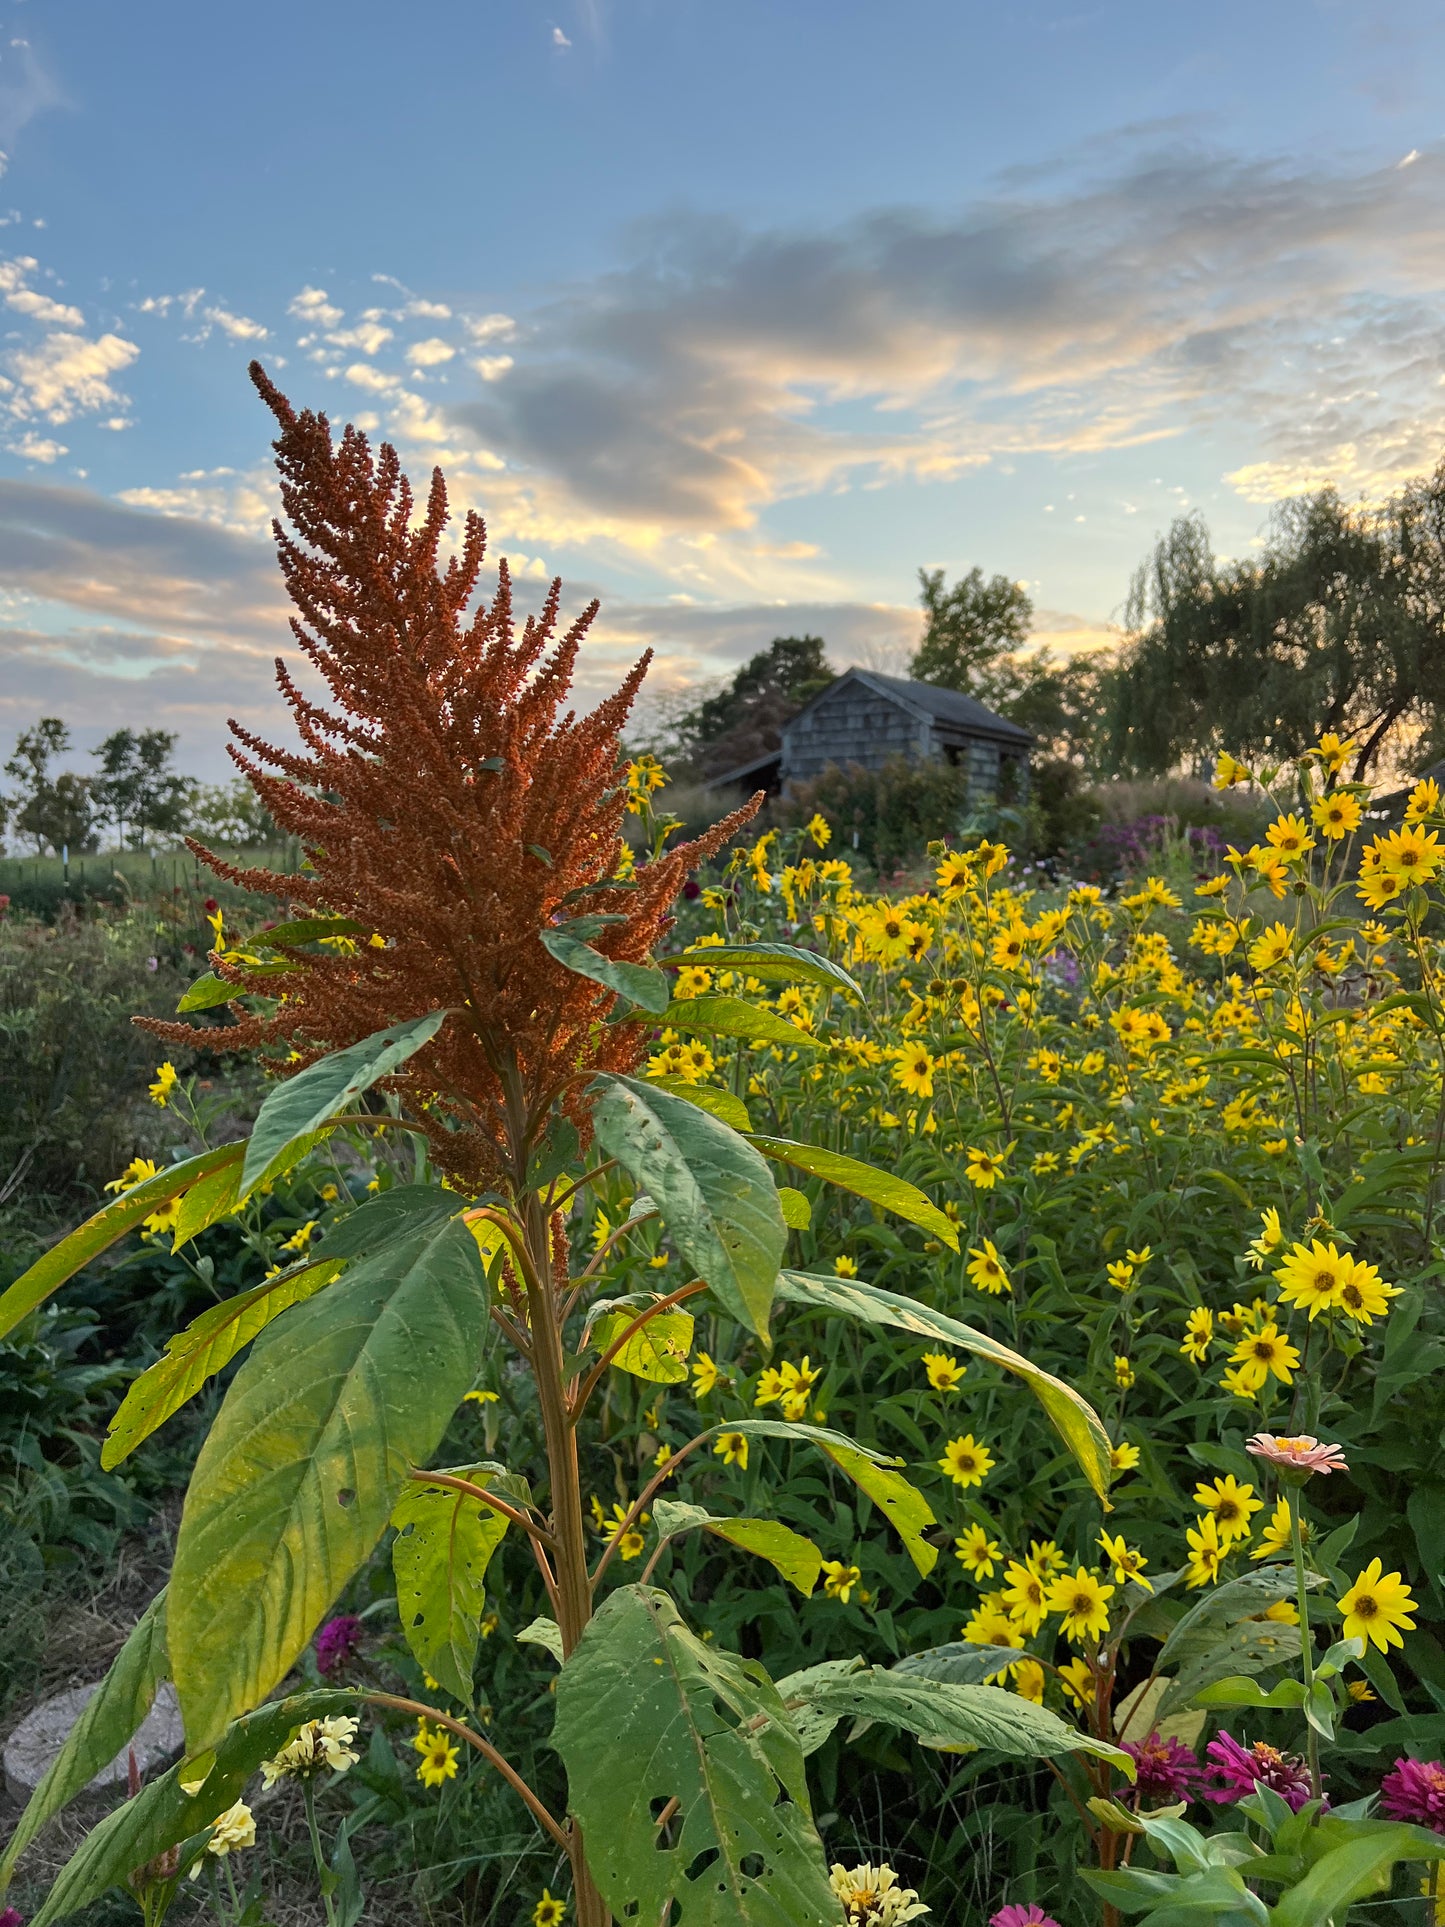 orange amaranth flower stalk in the summer garden